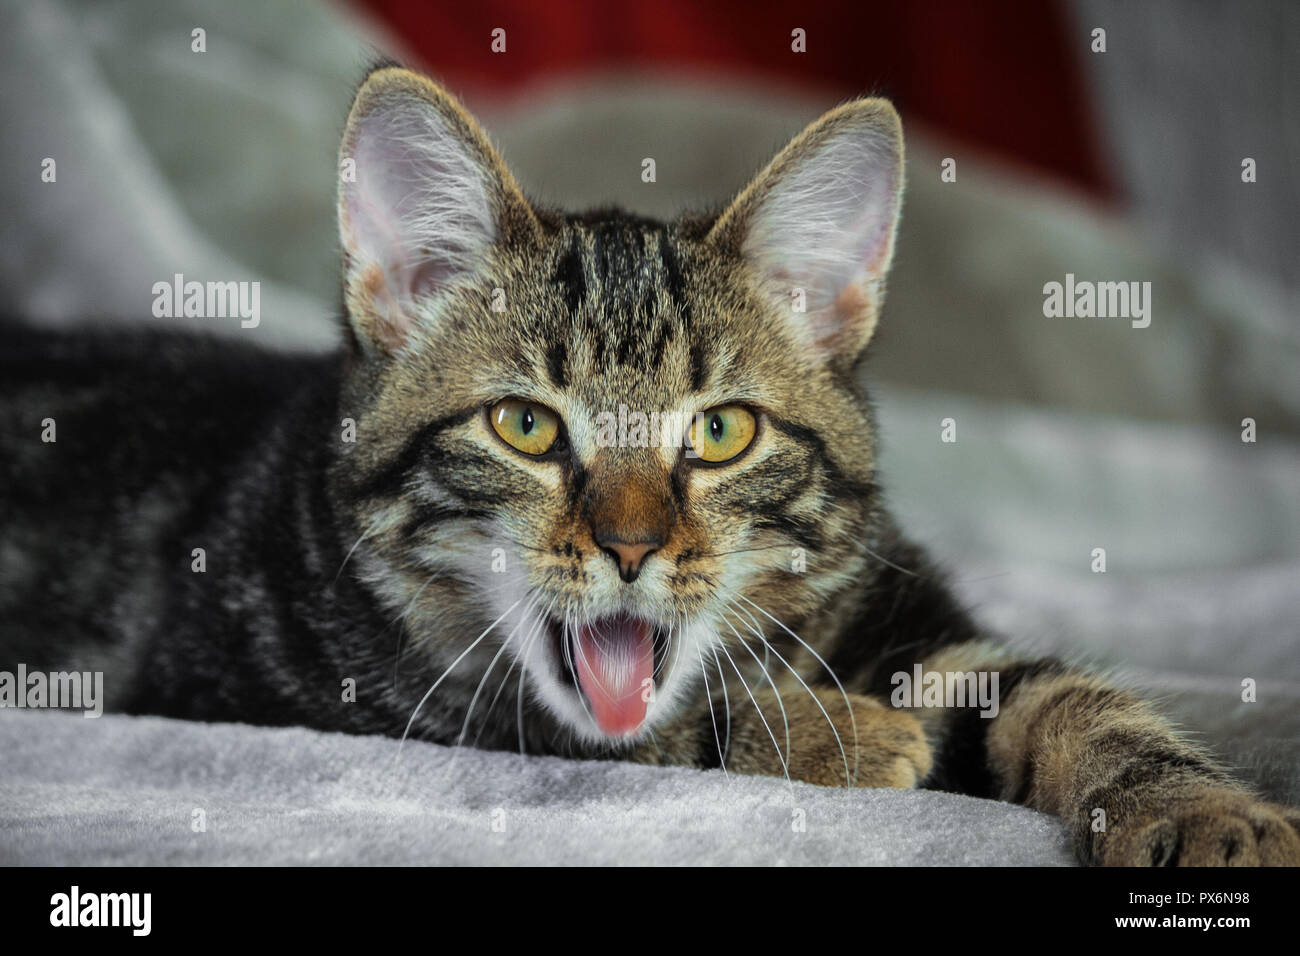 Piccolo mongrel striped kitten giacente su stomaco, zampe anteriori estesi, muso è nella fotocamera,guardando dritto, giallo con occhi verdi, arancione naso, animale Foto Stock